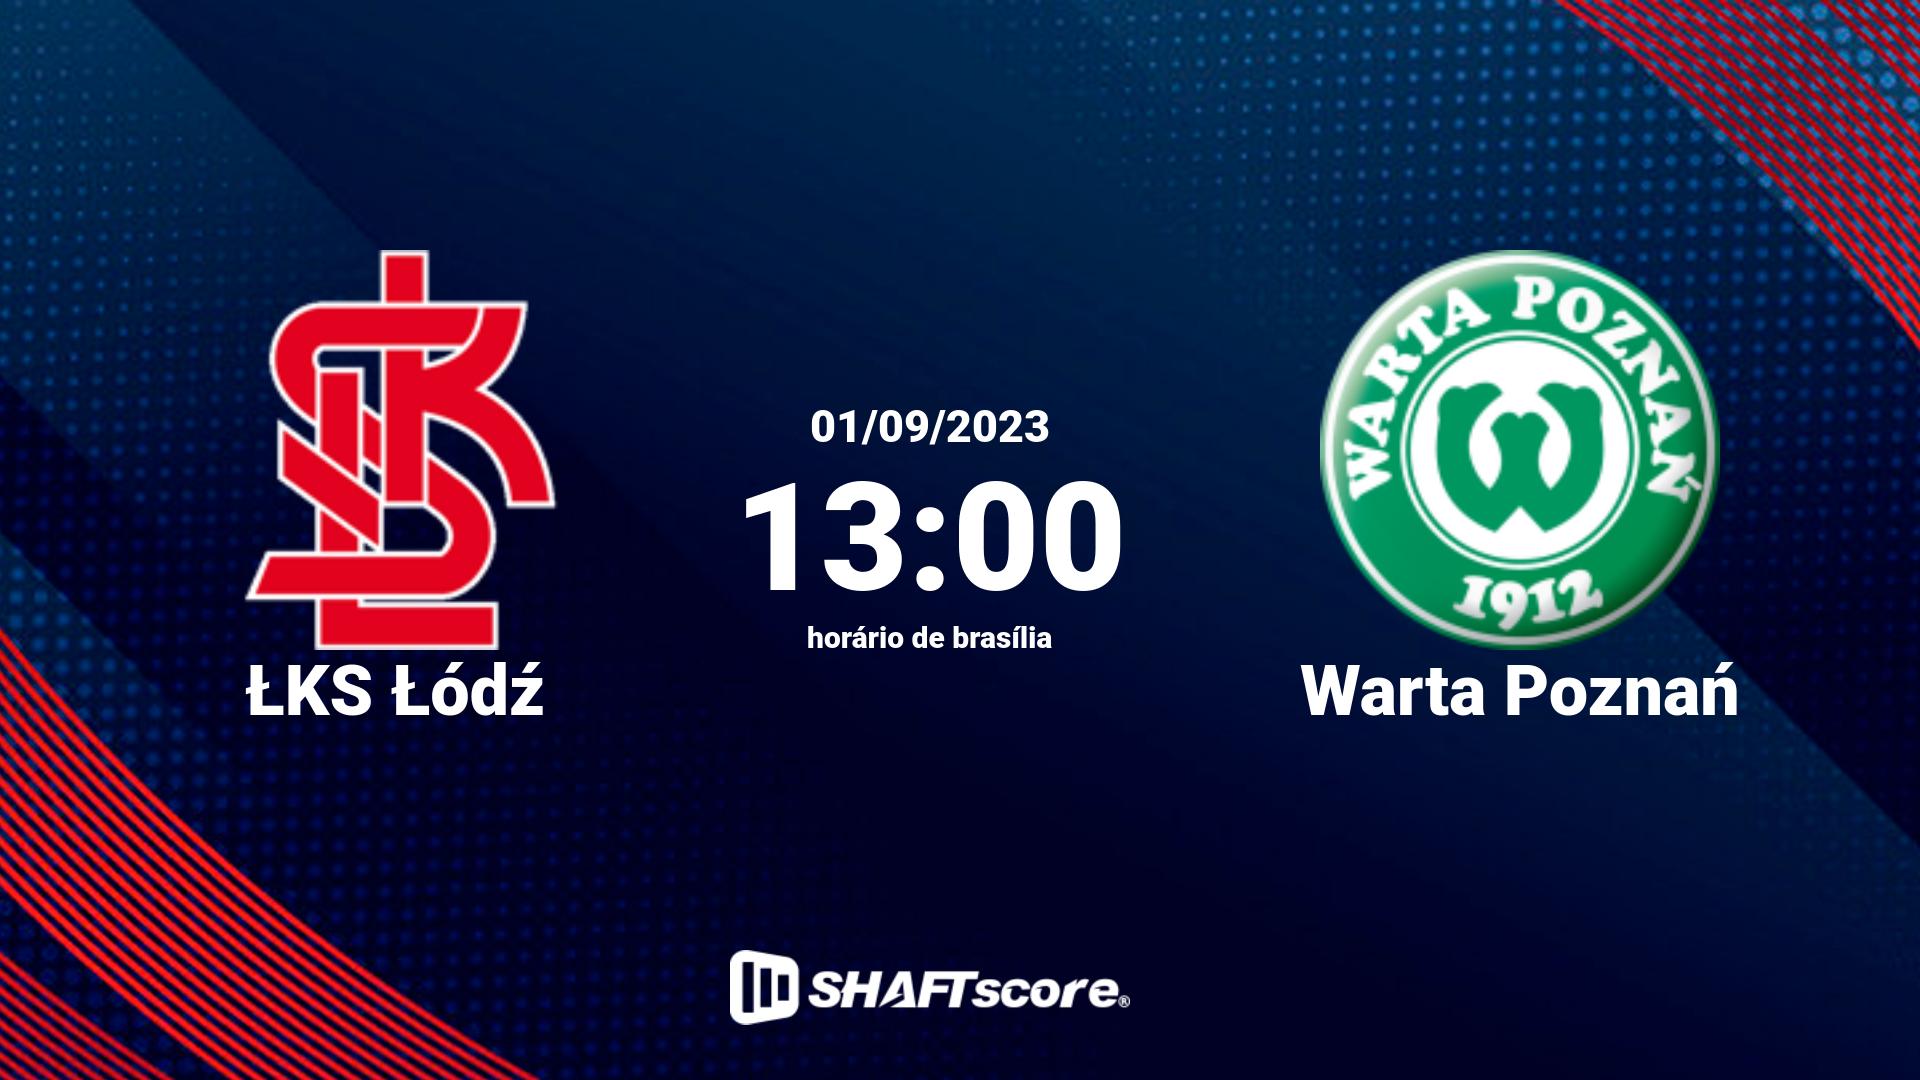 Estatísticas do jogo ŁKS Łódź vs Warta Poznań 01.09 13:00